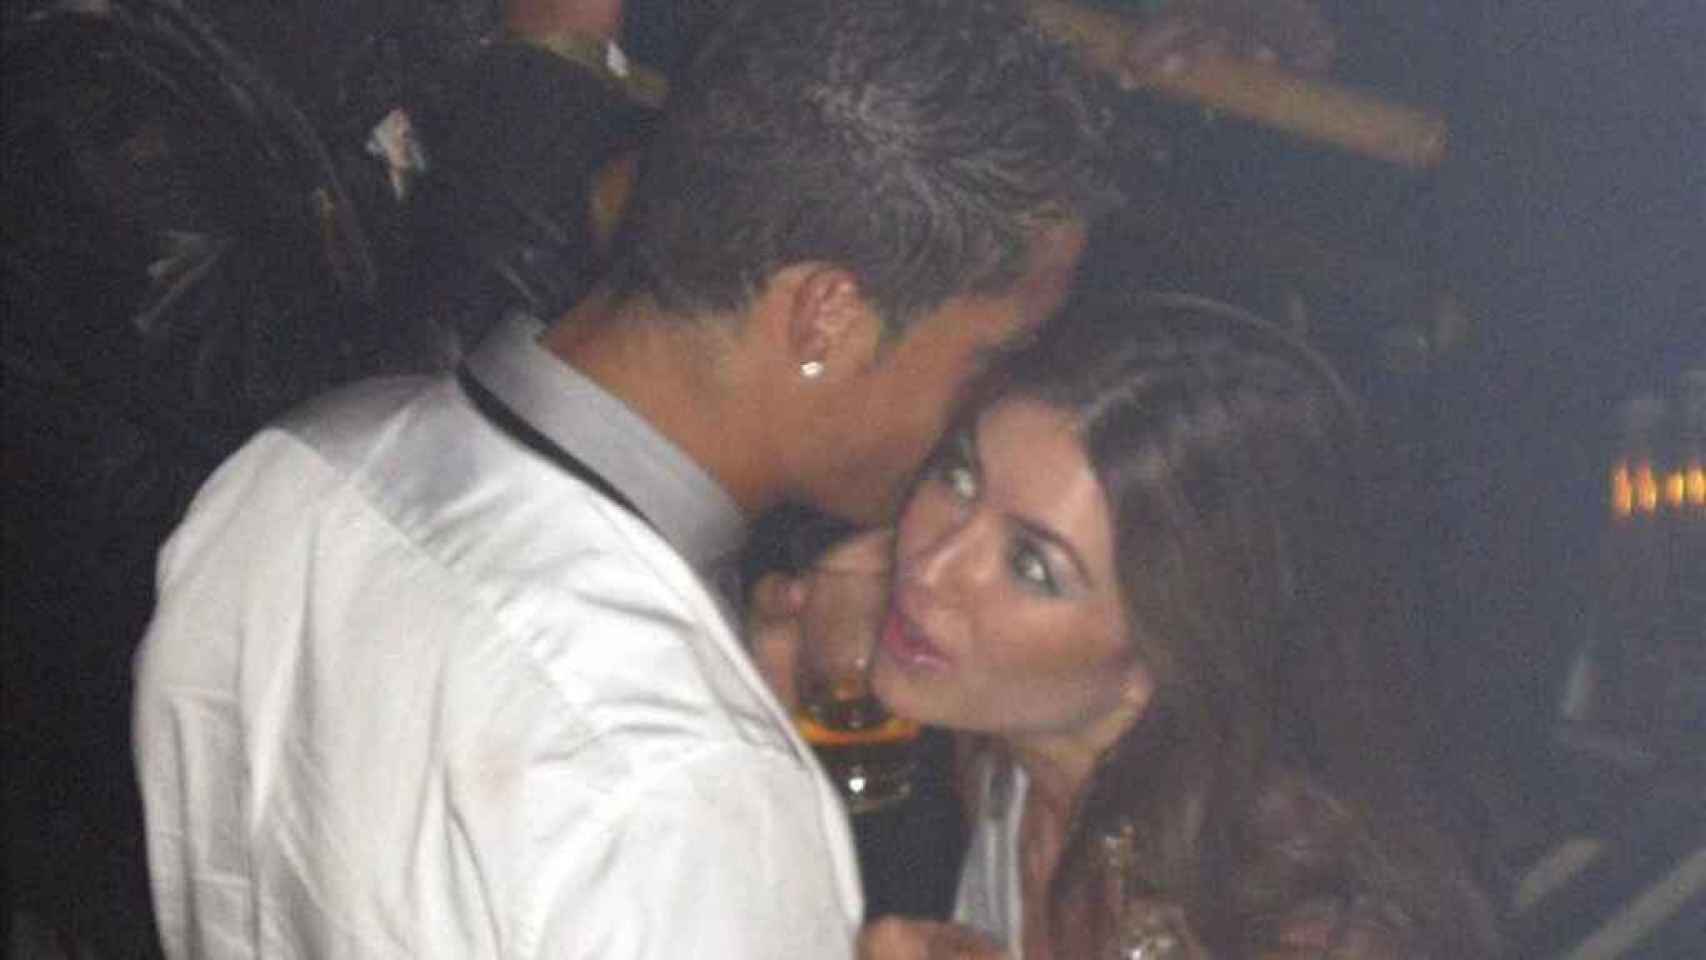 Cristiano Ronaldo tontea en una fiesta con Mayorga